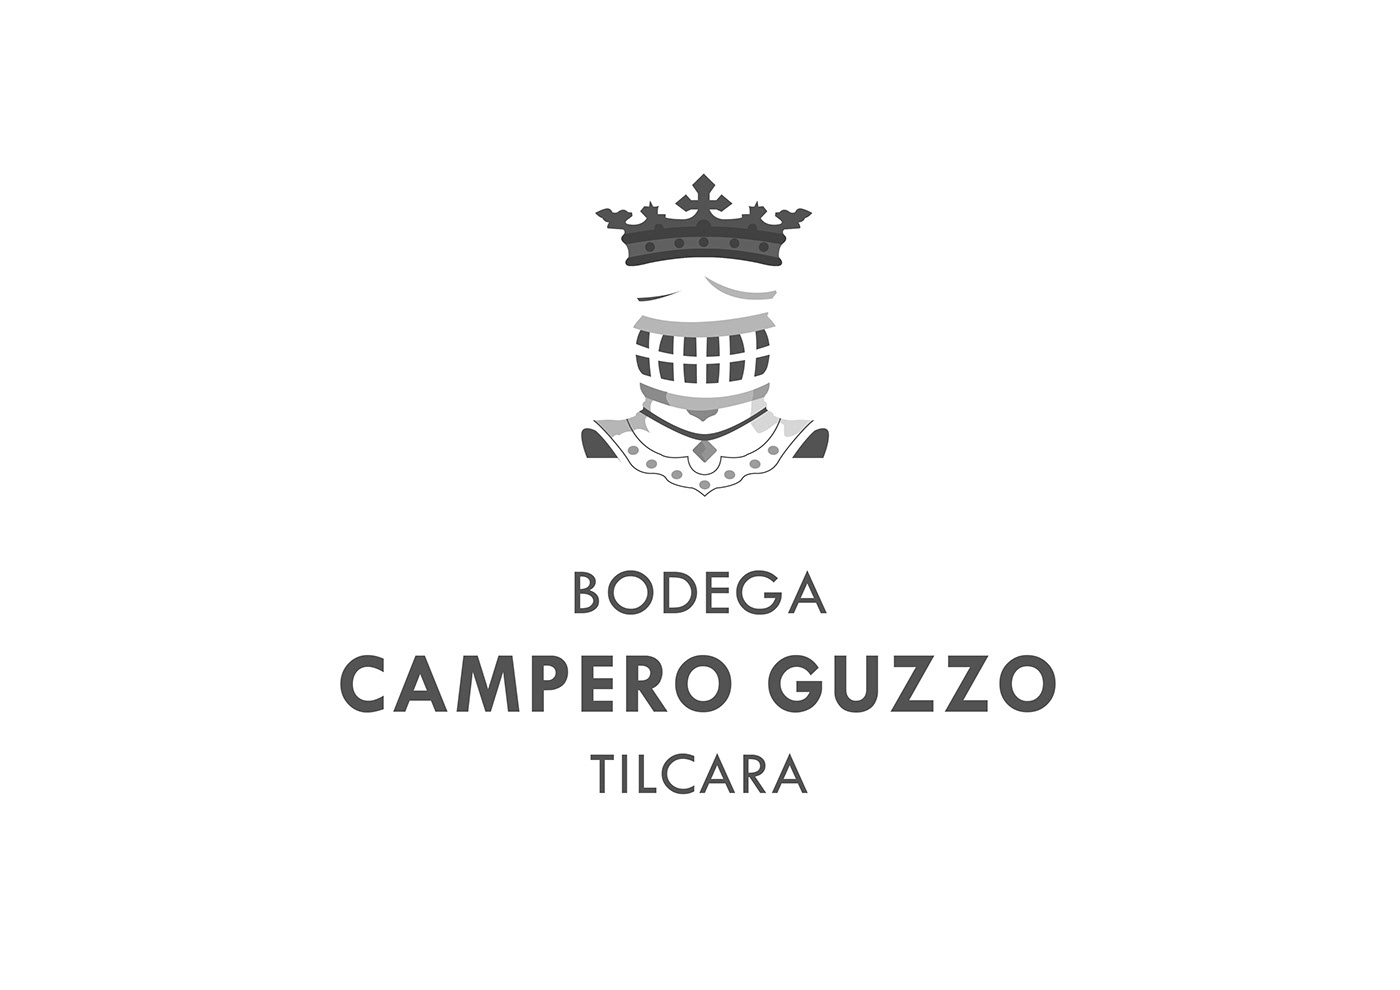 BODEGA CAMPERO GUZZO tilcara diseño gráfico identidad Etiquetas Vino graphic design  design branding  wine